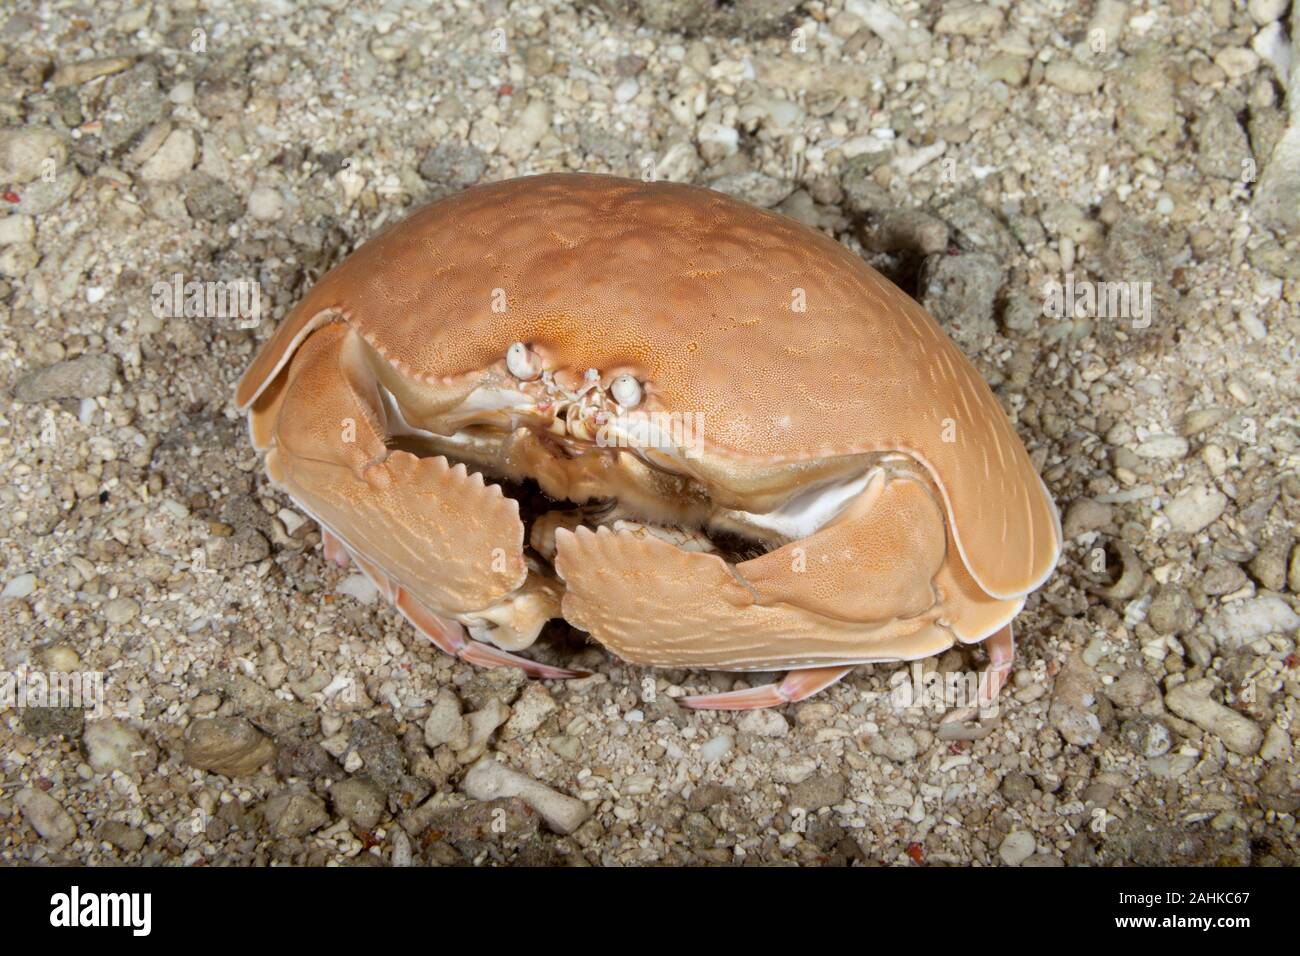 Giant Box crab,Shame-faced crab,, Calappa calappa Stock Photo